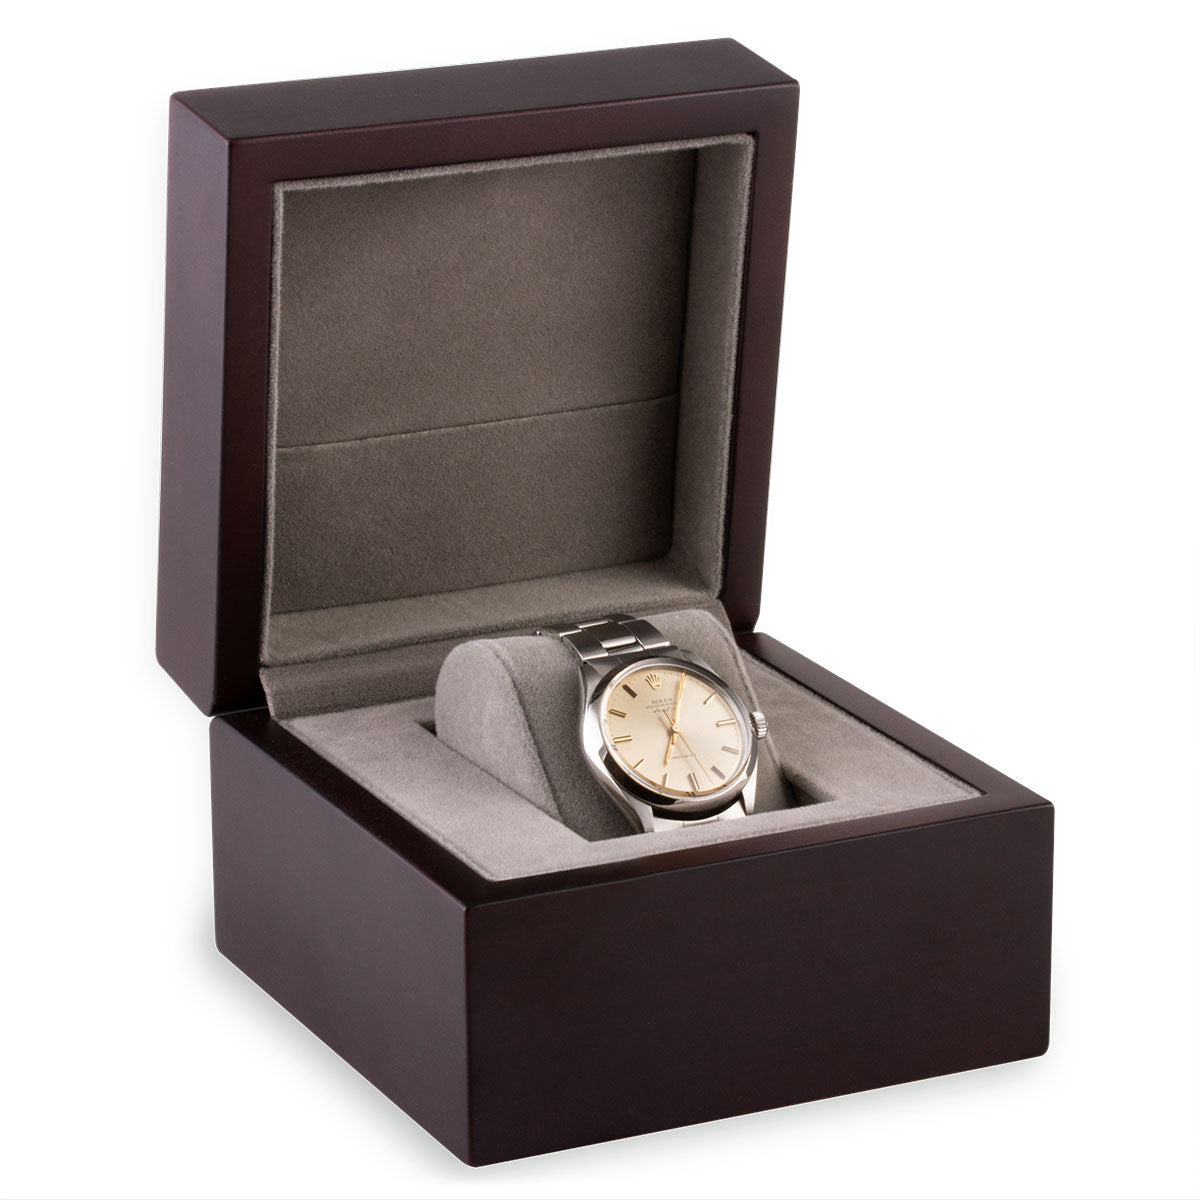 Anatole Baker - Wooden watch case - 1 watch storage